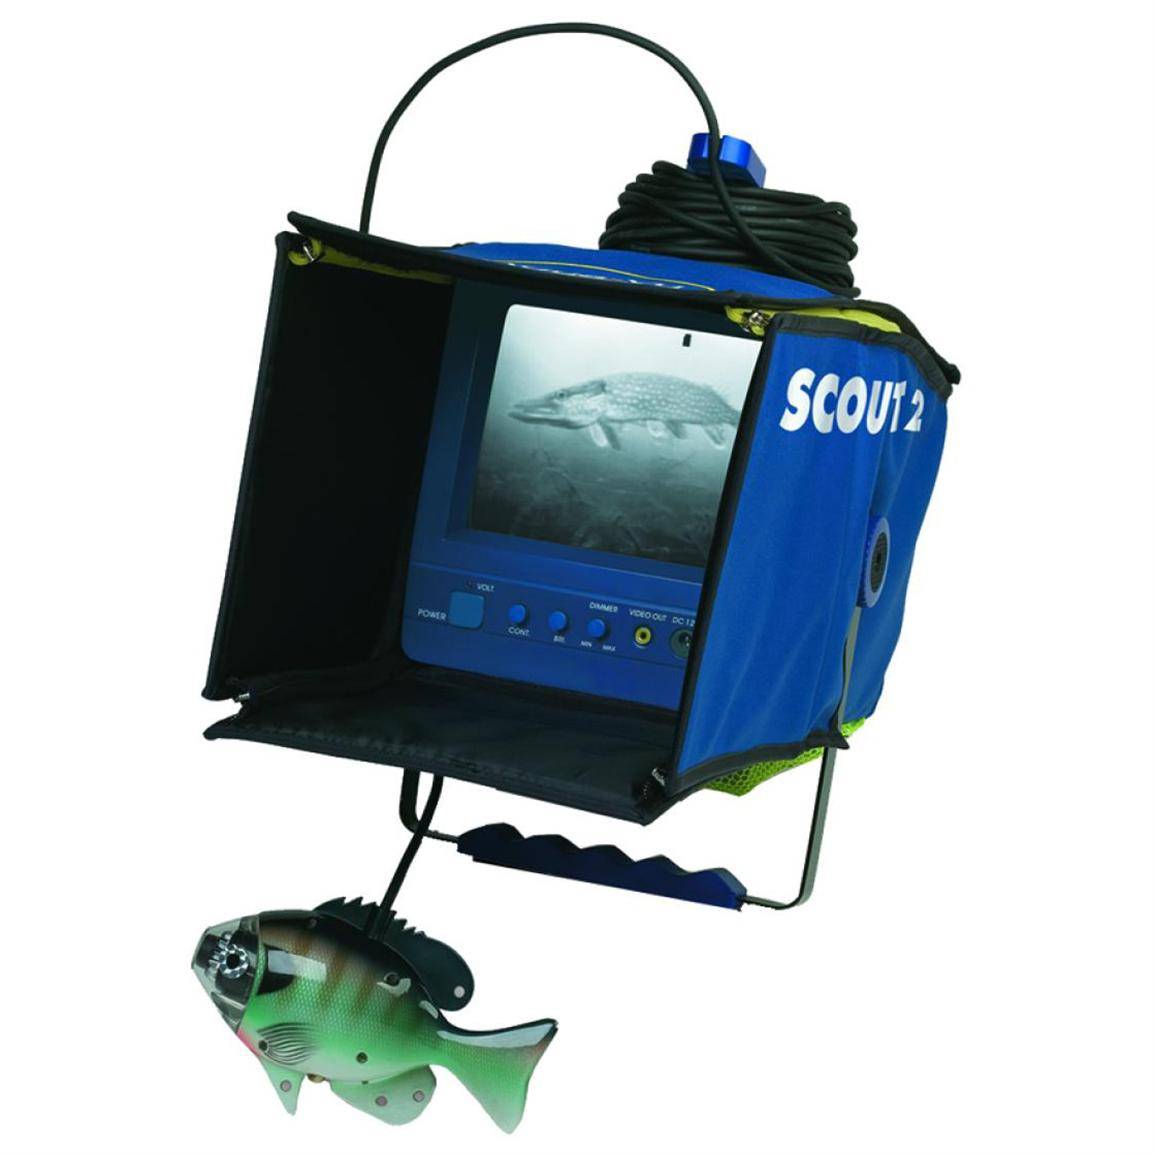 Камера аква. Подводная камера Aqua-vu. Подводная камера Aqua-vu Scout srt. Подводная камера Aqua-vu Claw с манипулятором. Подводная камера Aqua-vu Scout XL Fish.